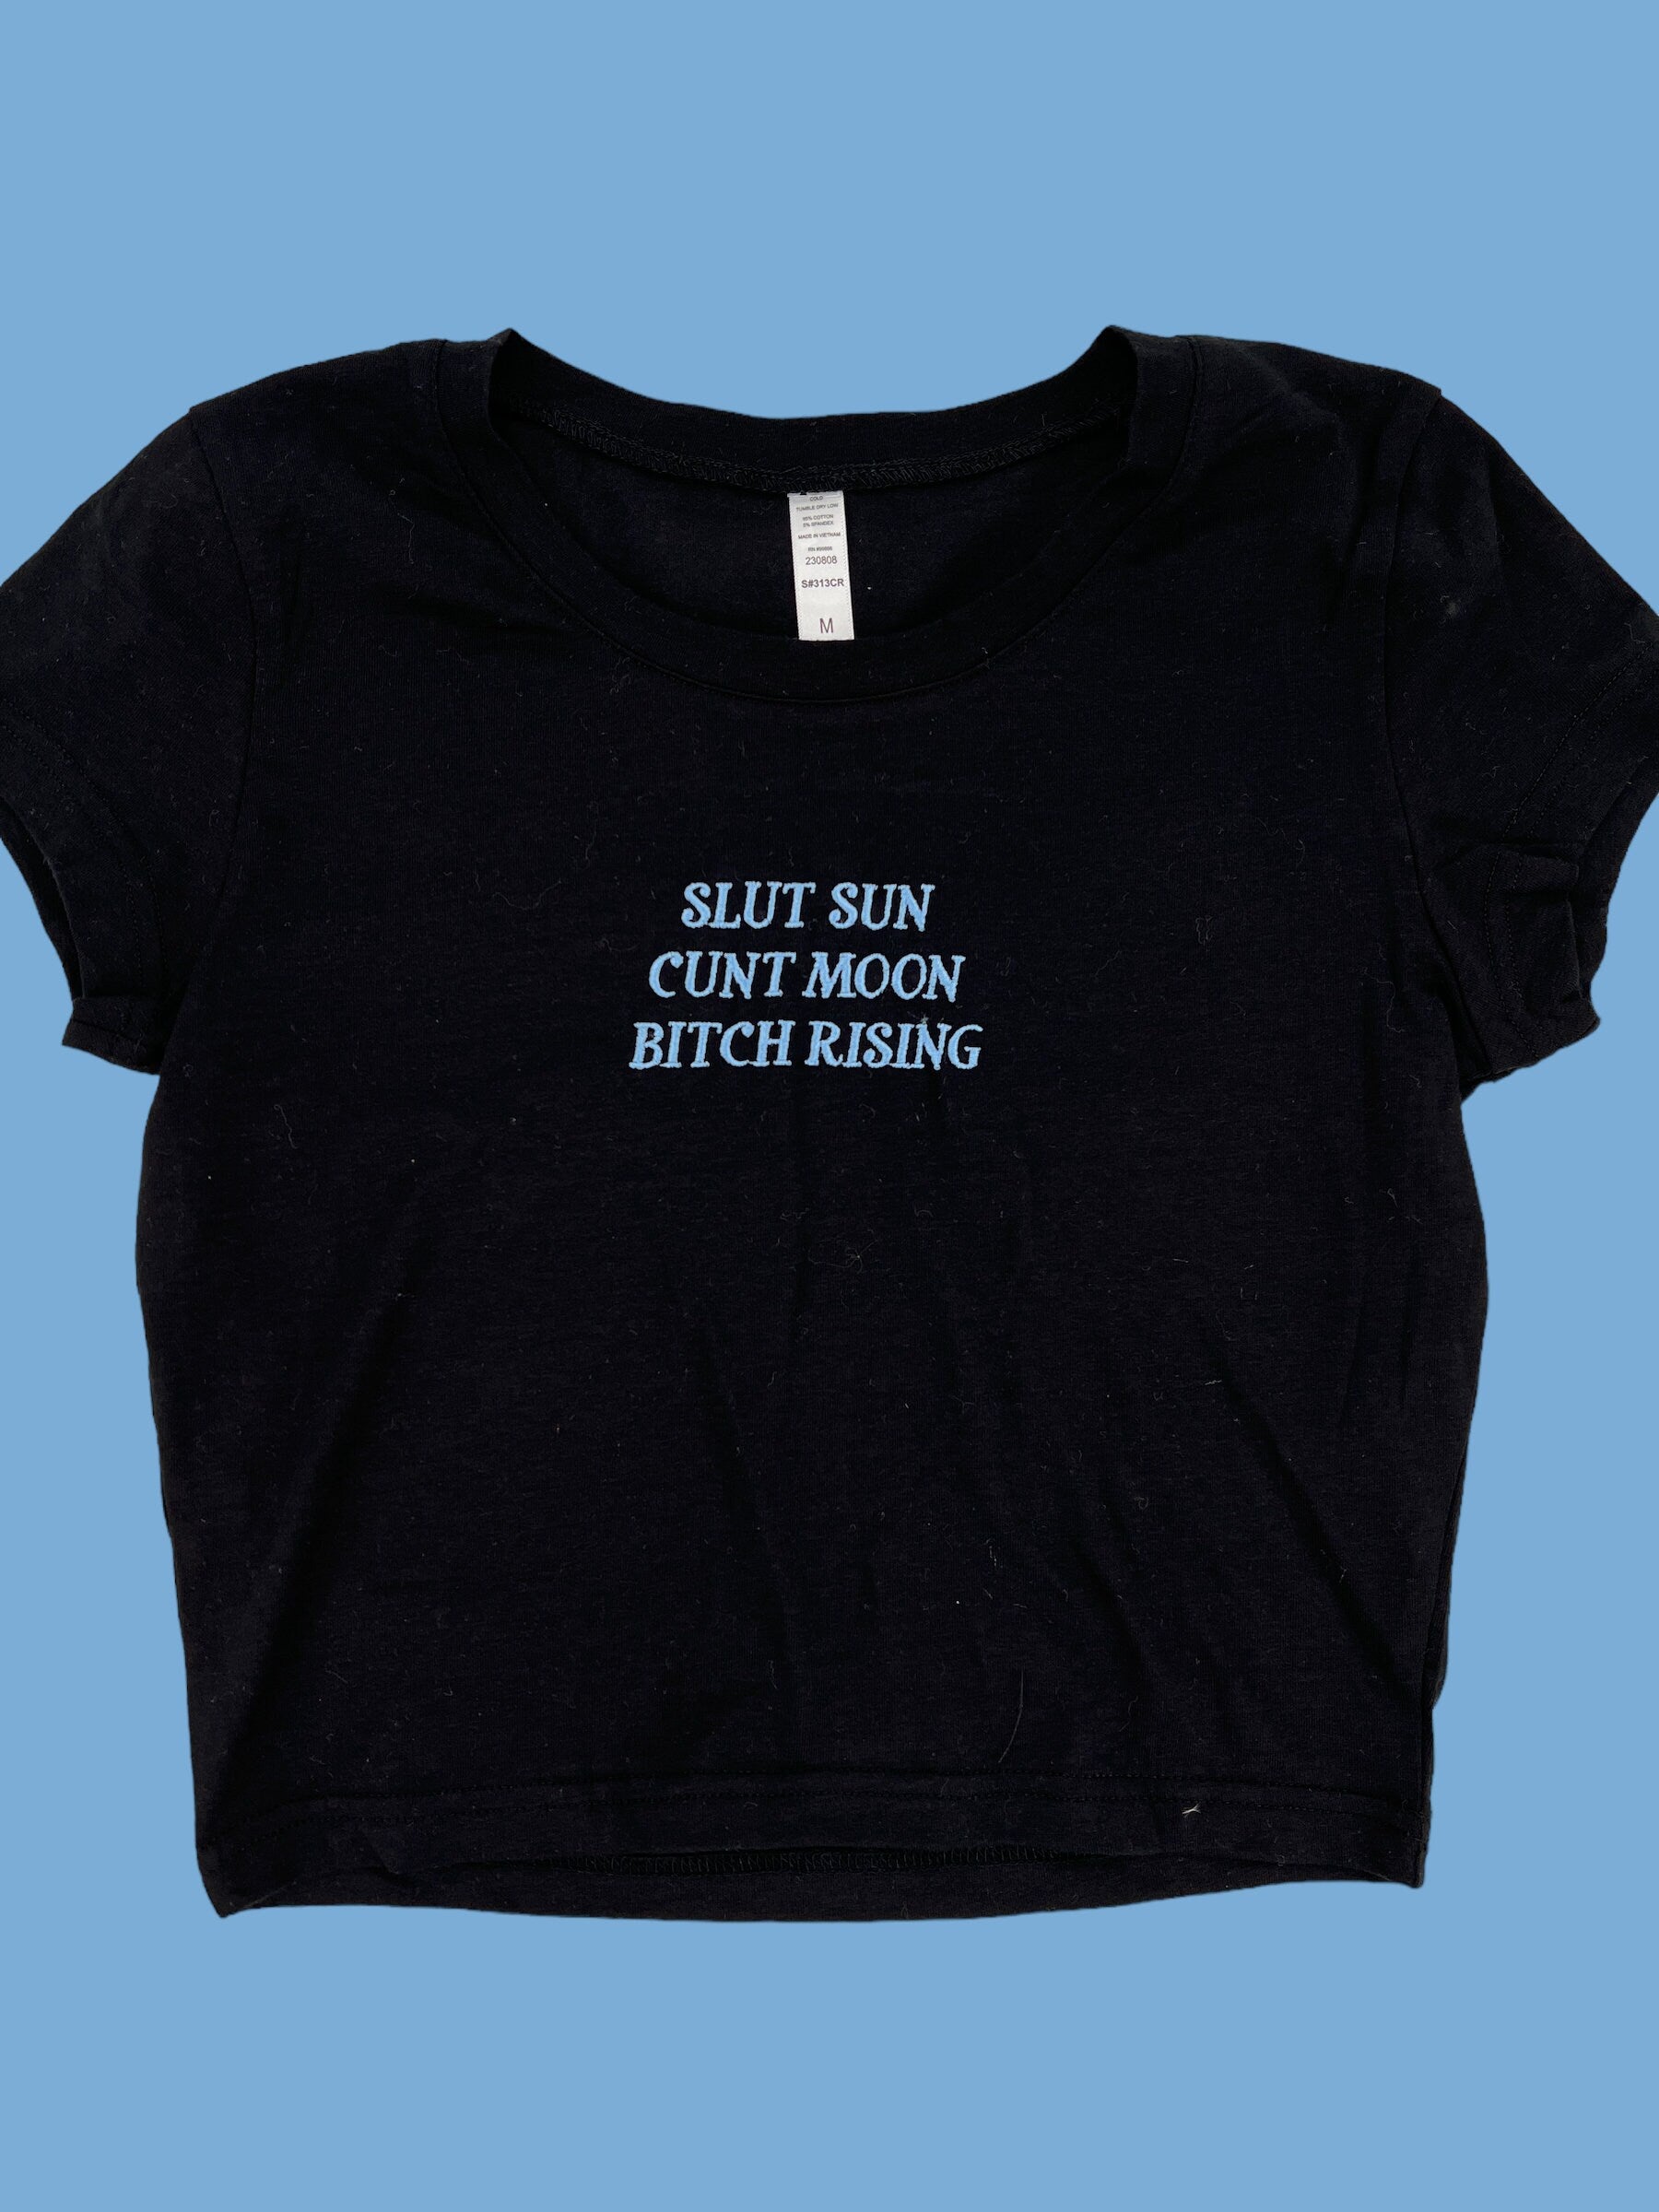 a black t - shirt that says slut sun, cunt moon, bitch